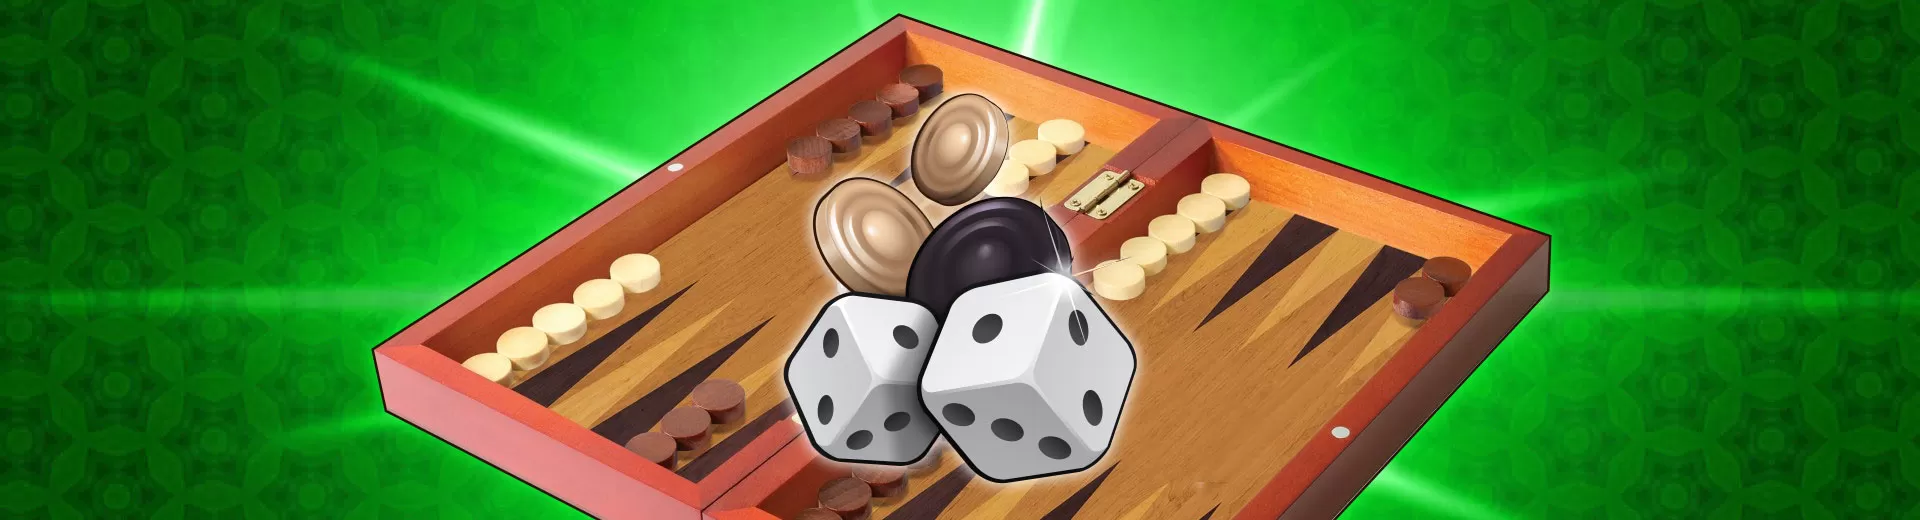 Backgammon King Emulator Pc